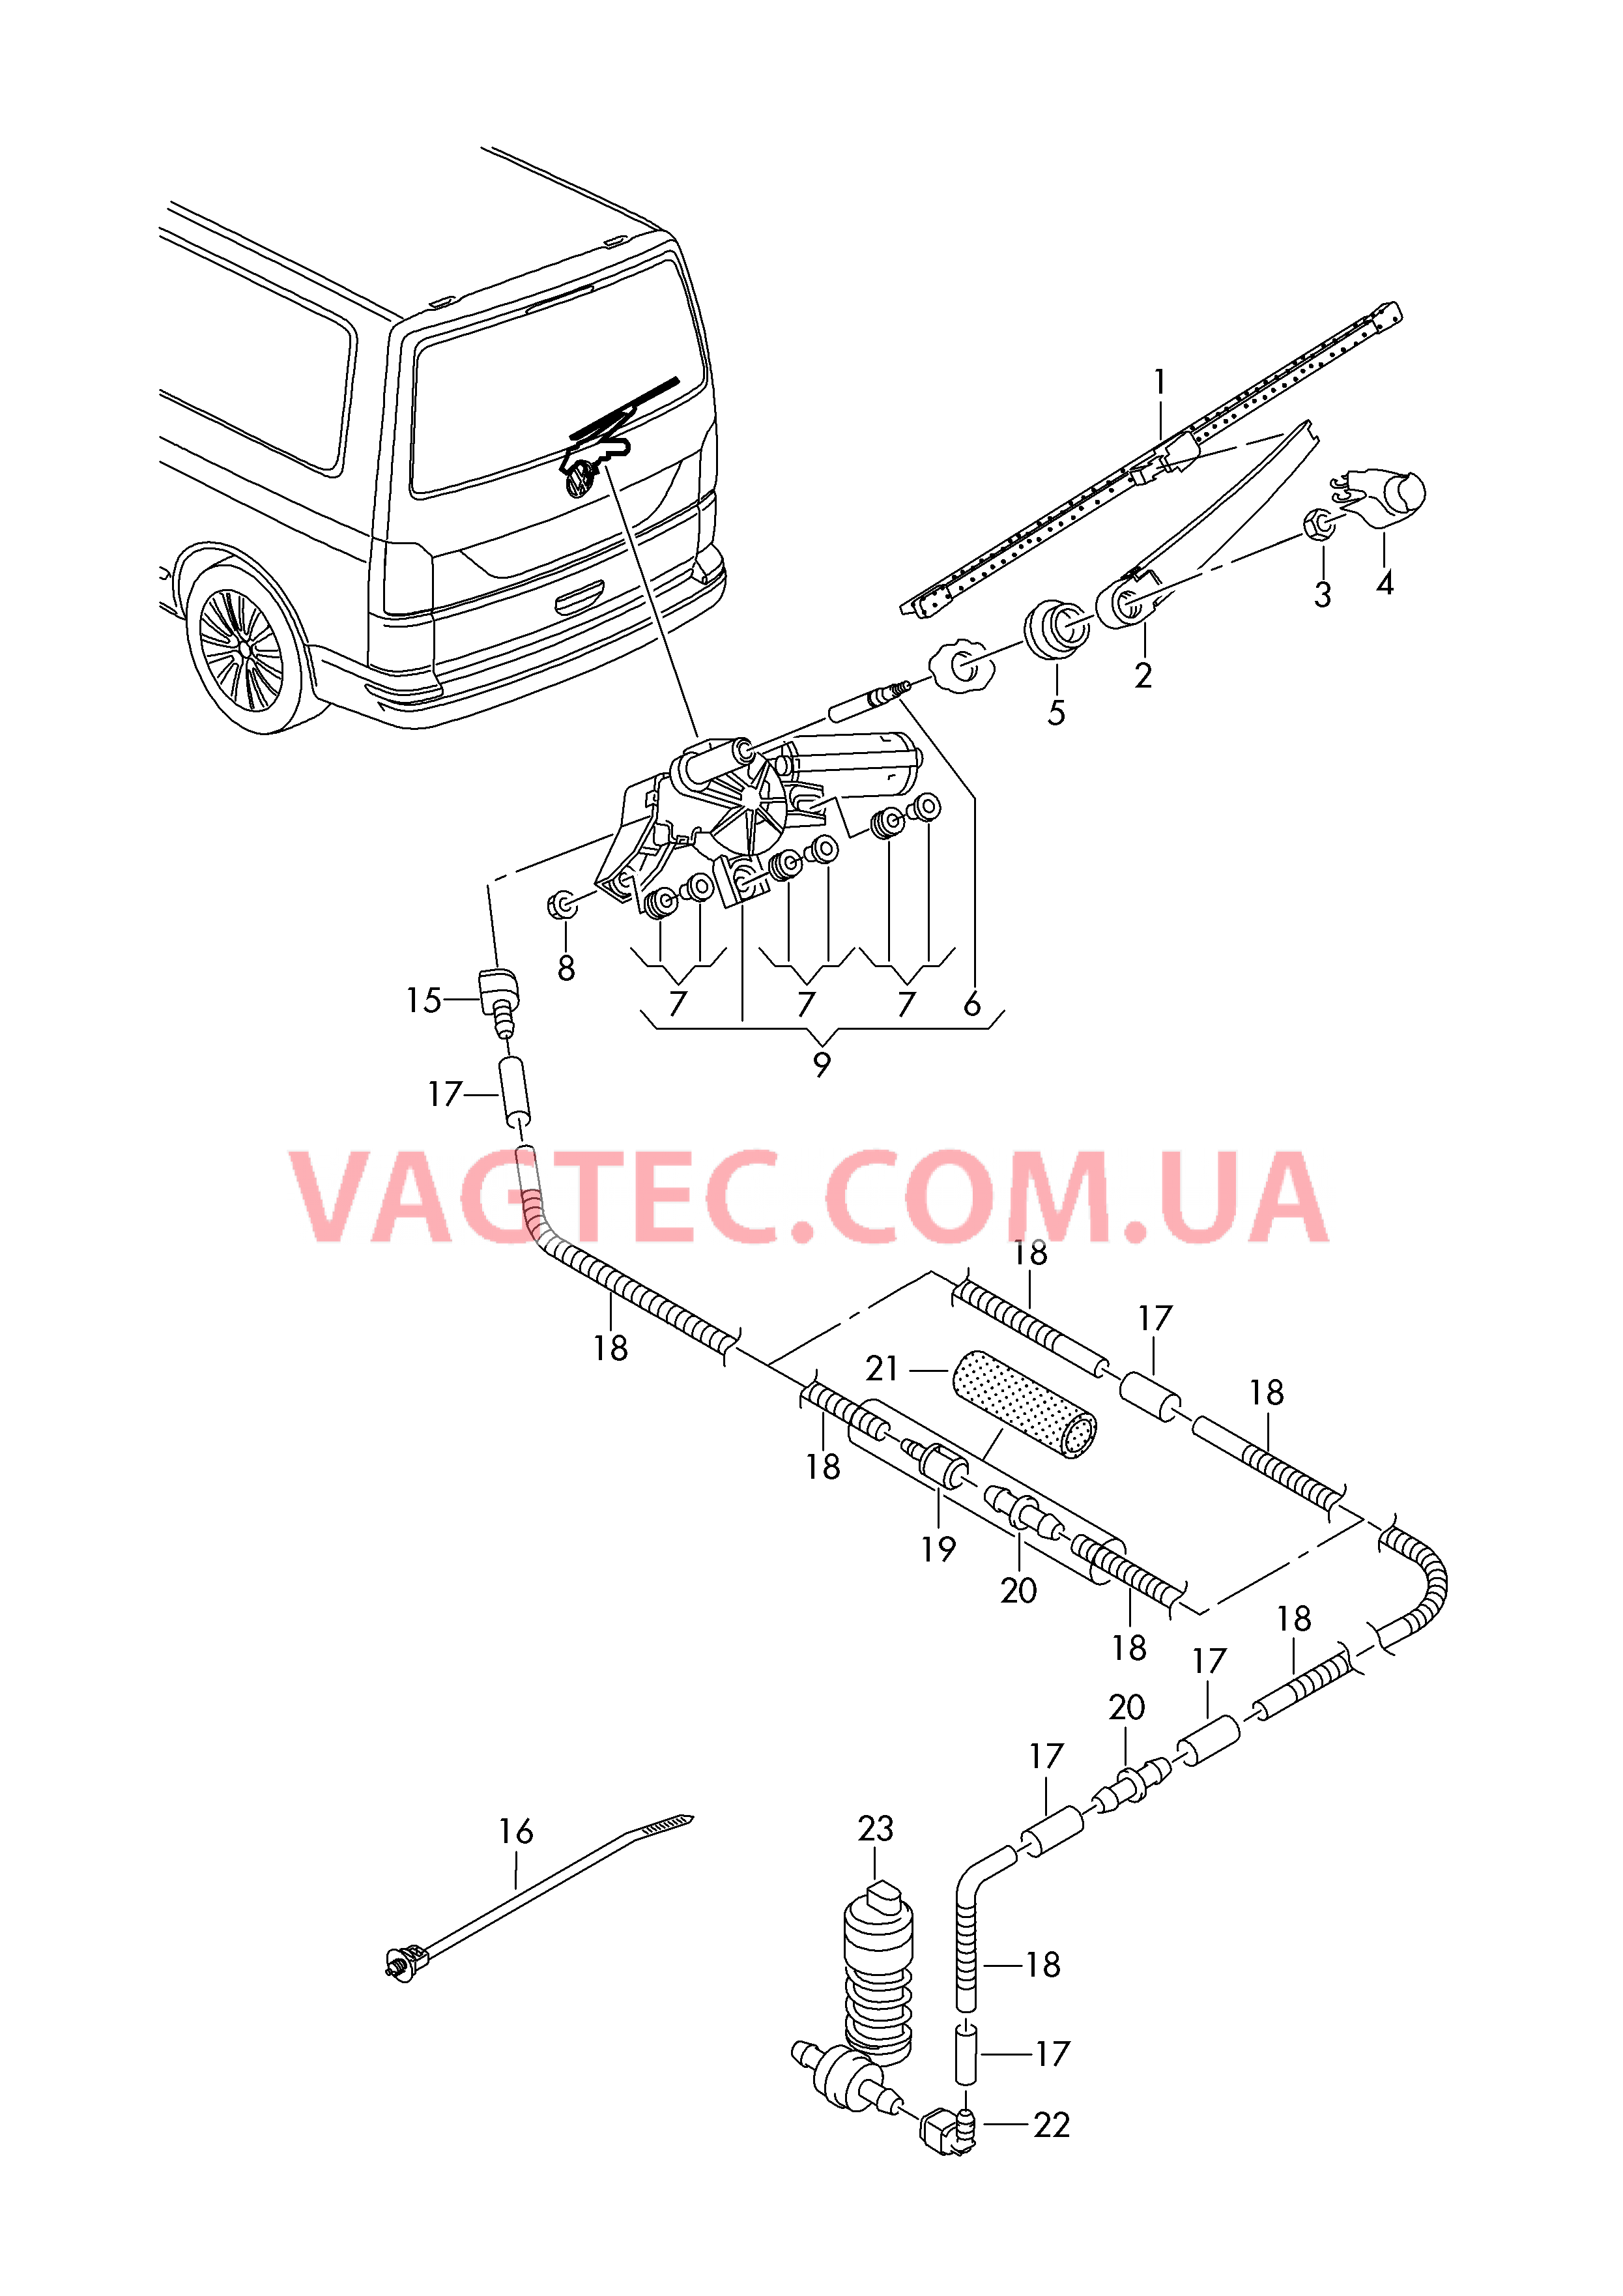 Стеклоочиститель/омыватель для заднего стекла  Крышка багажного отсека  для VOLKSWAGEN Transporter 2017